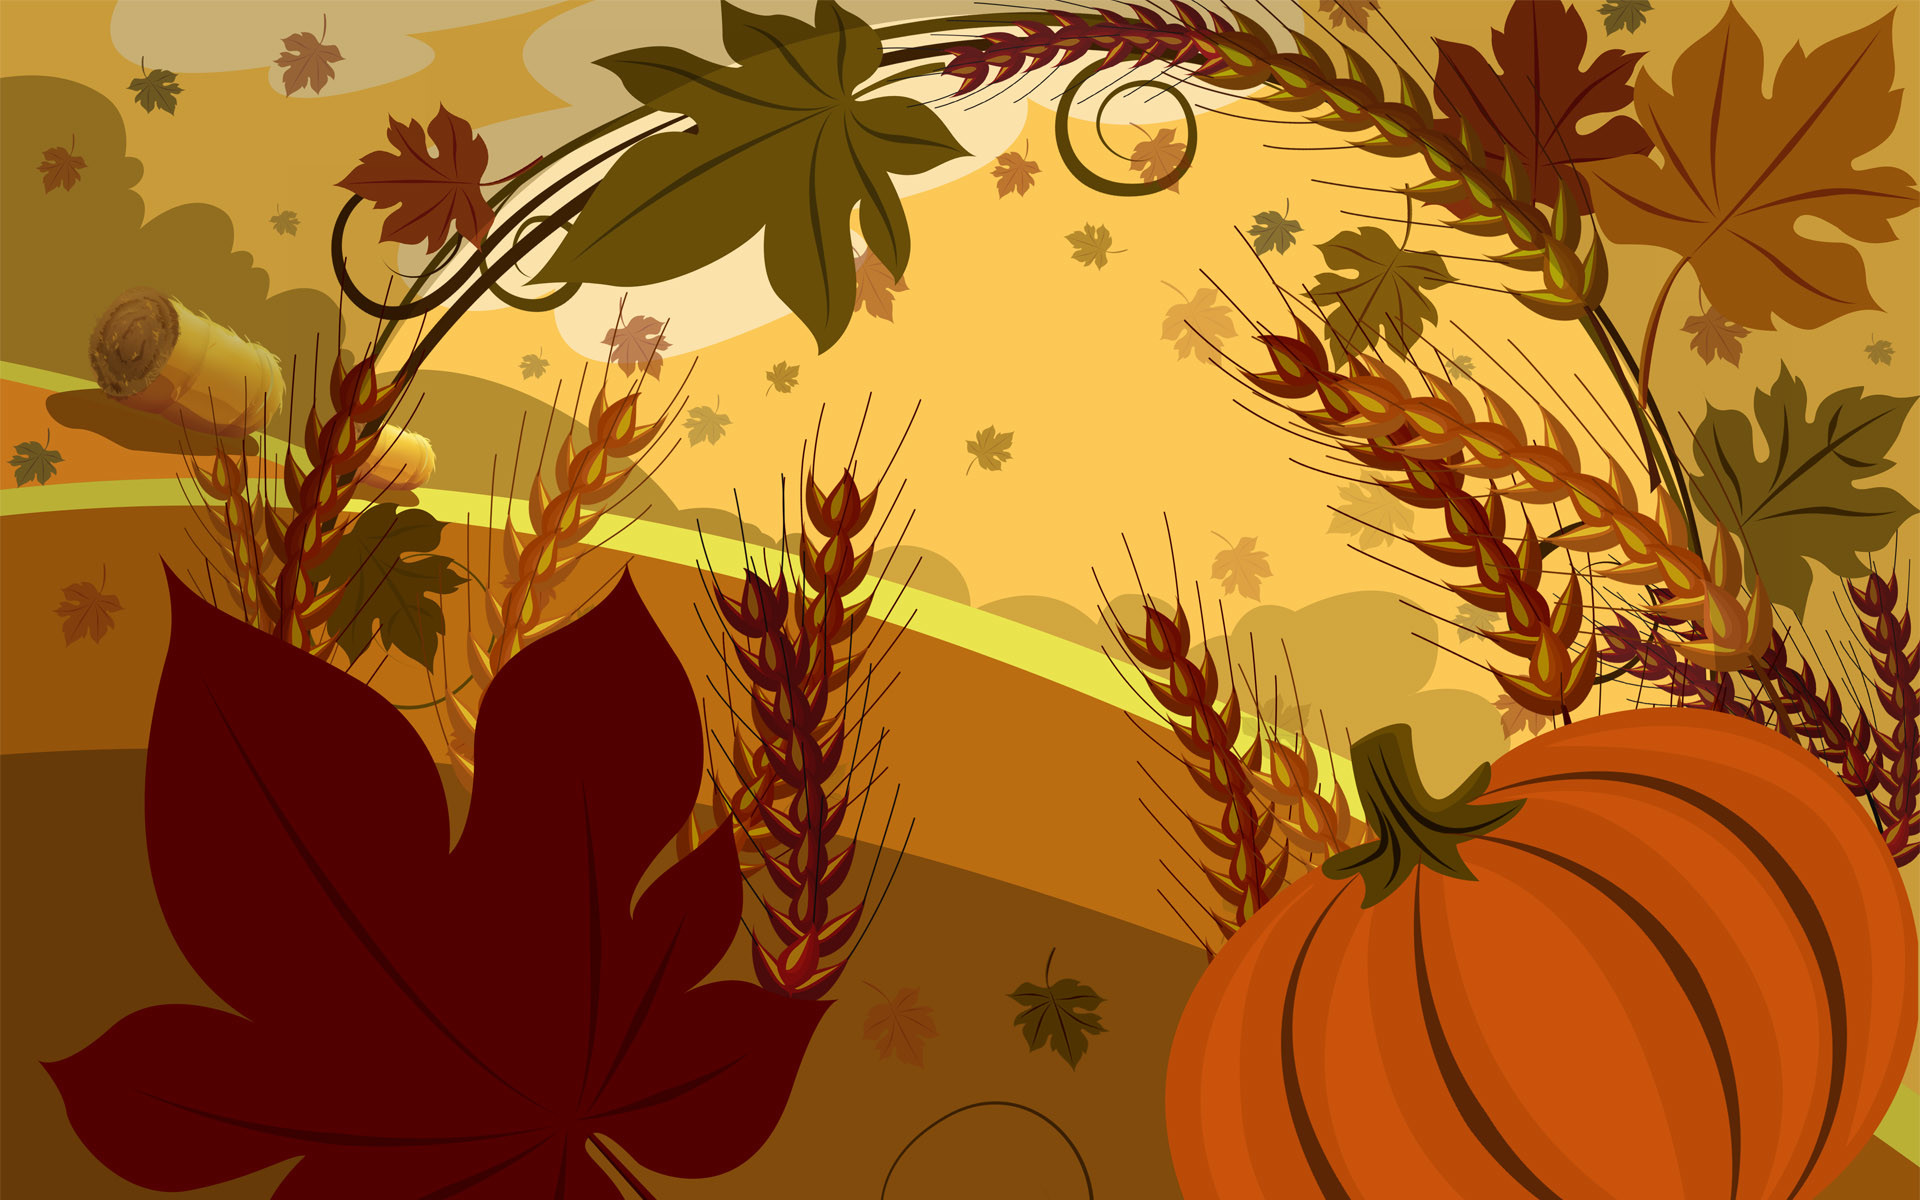 Thanksgiving Image Wallpaper